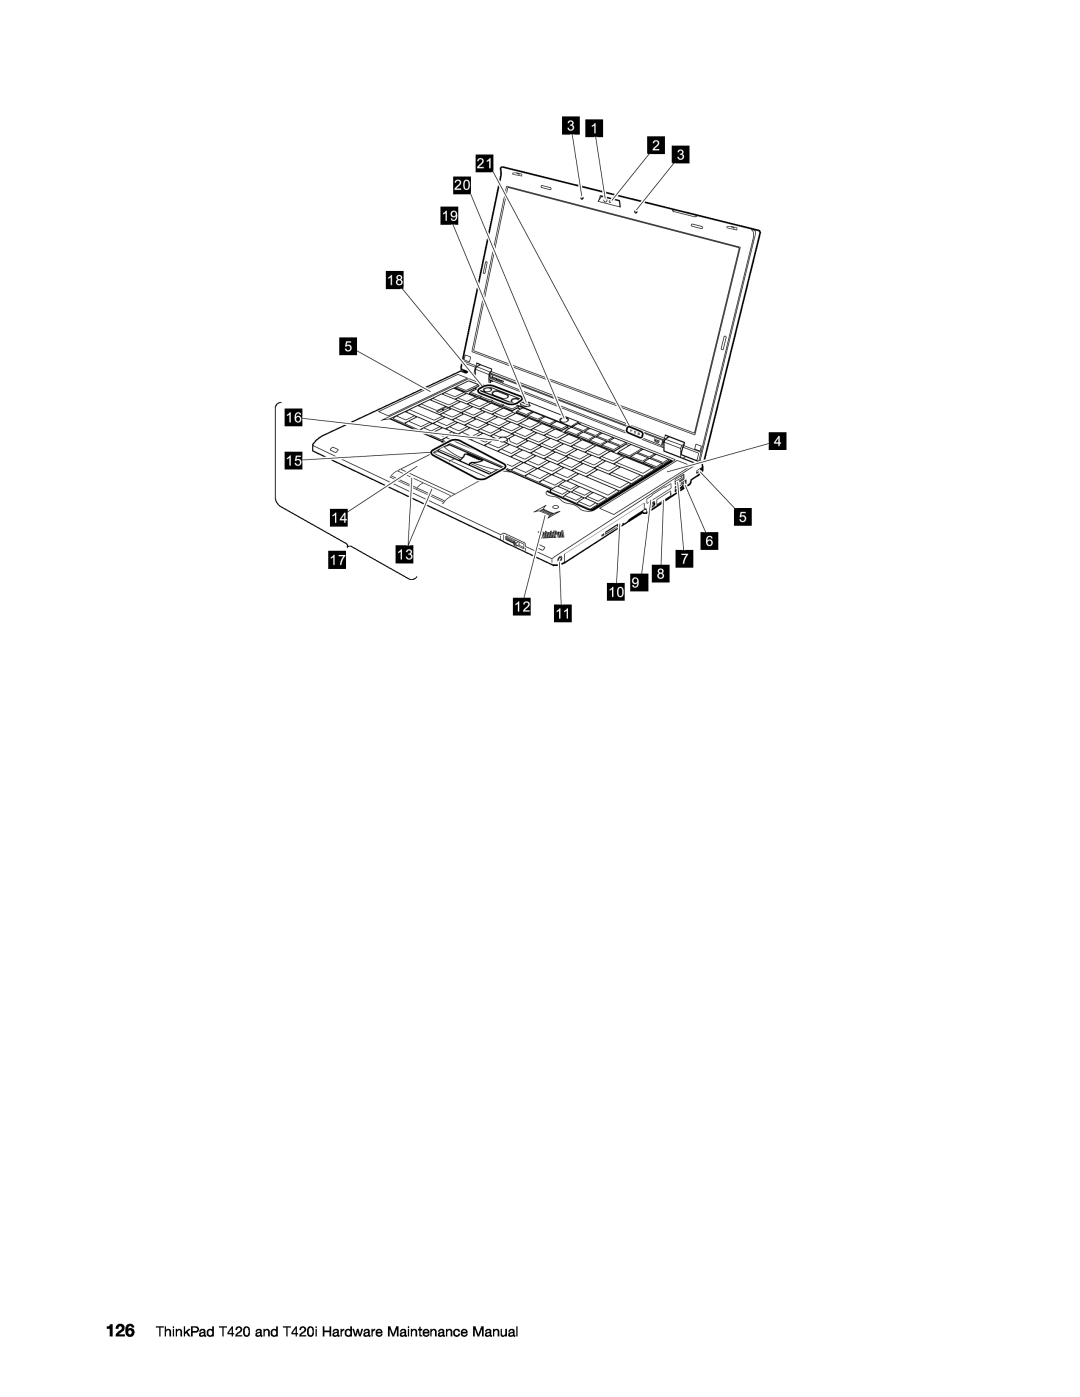 Lenovo manual ThinkPad T420 and T420i Hardware Maintenance Manual 